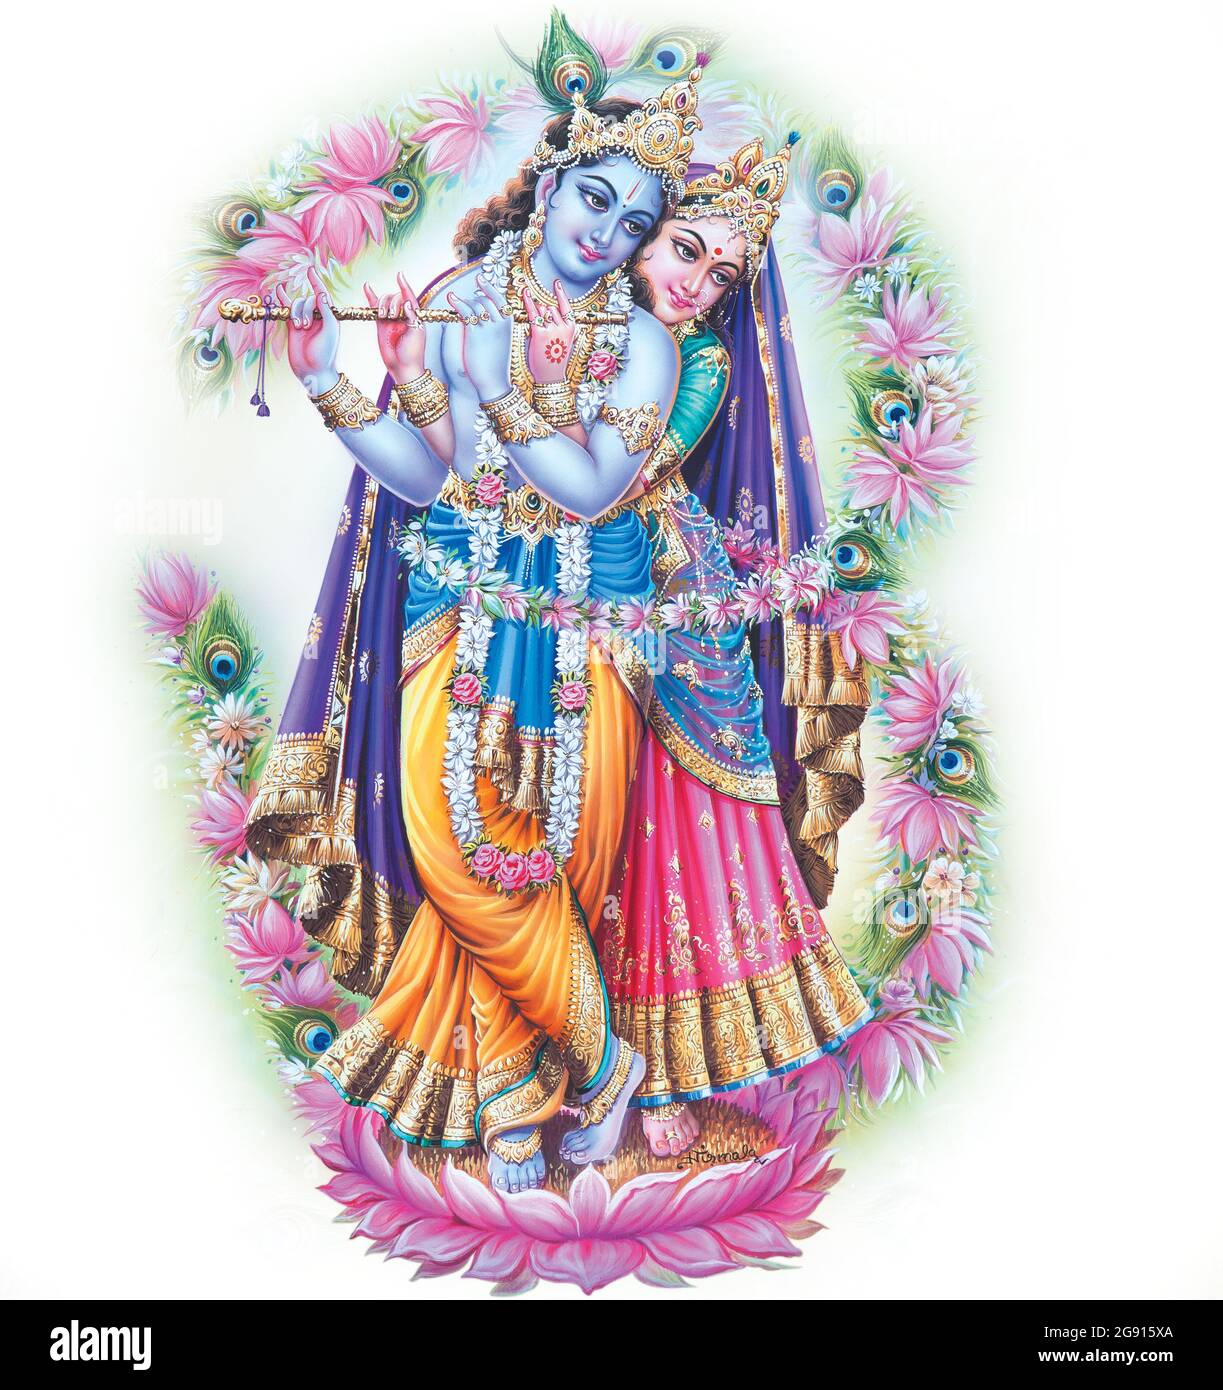 Indian God Radhakrishna, Indian Mythological Image of Radhakrishna. Stock Photo